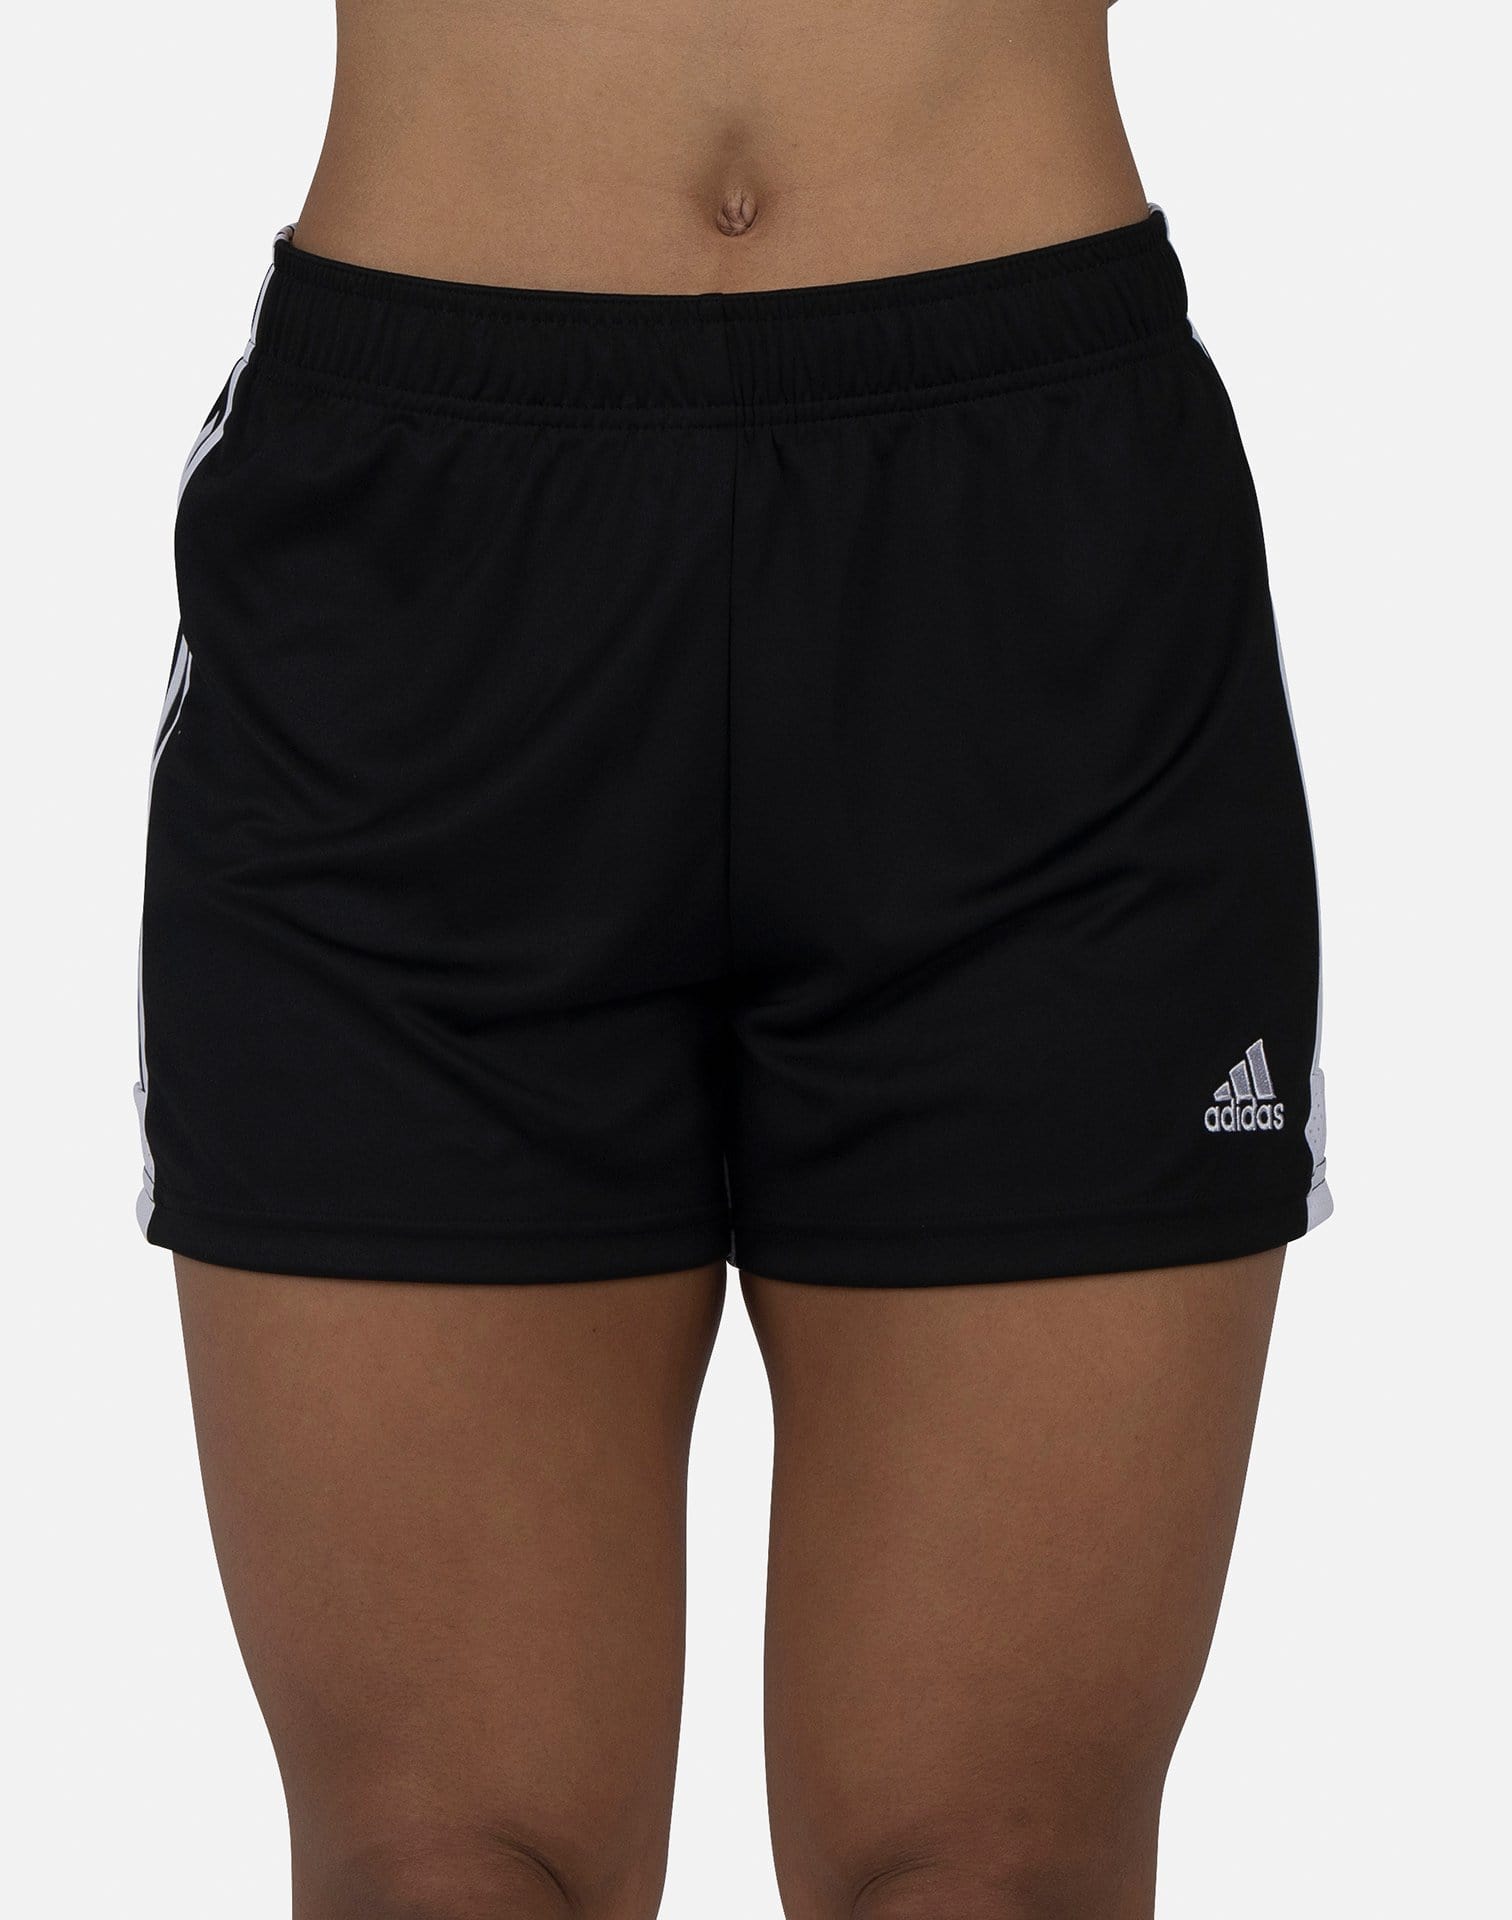 adidas women's tastigo 19 shorts